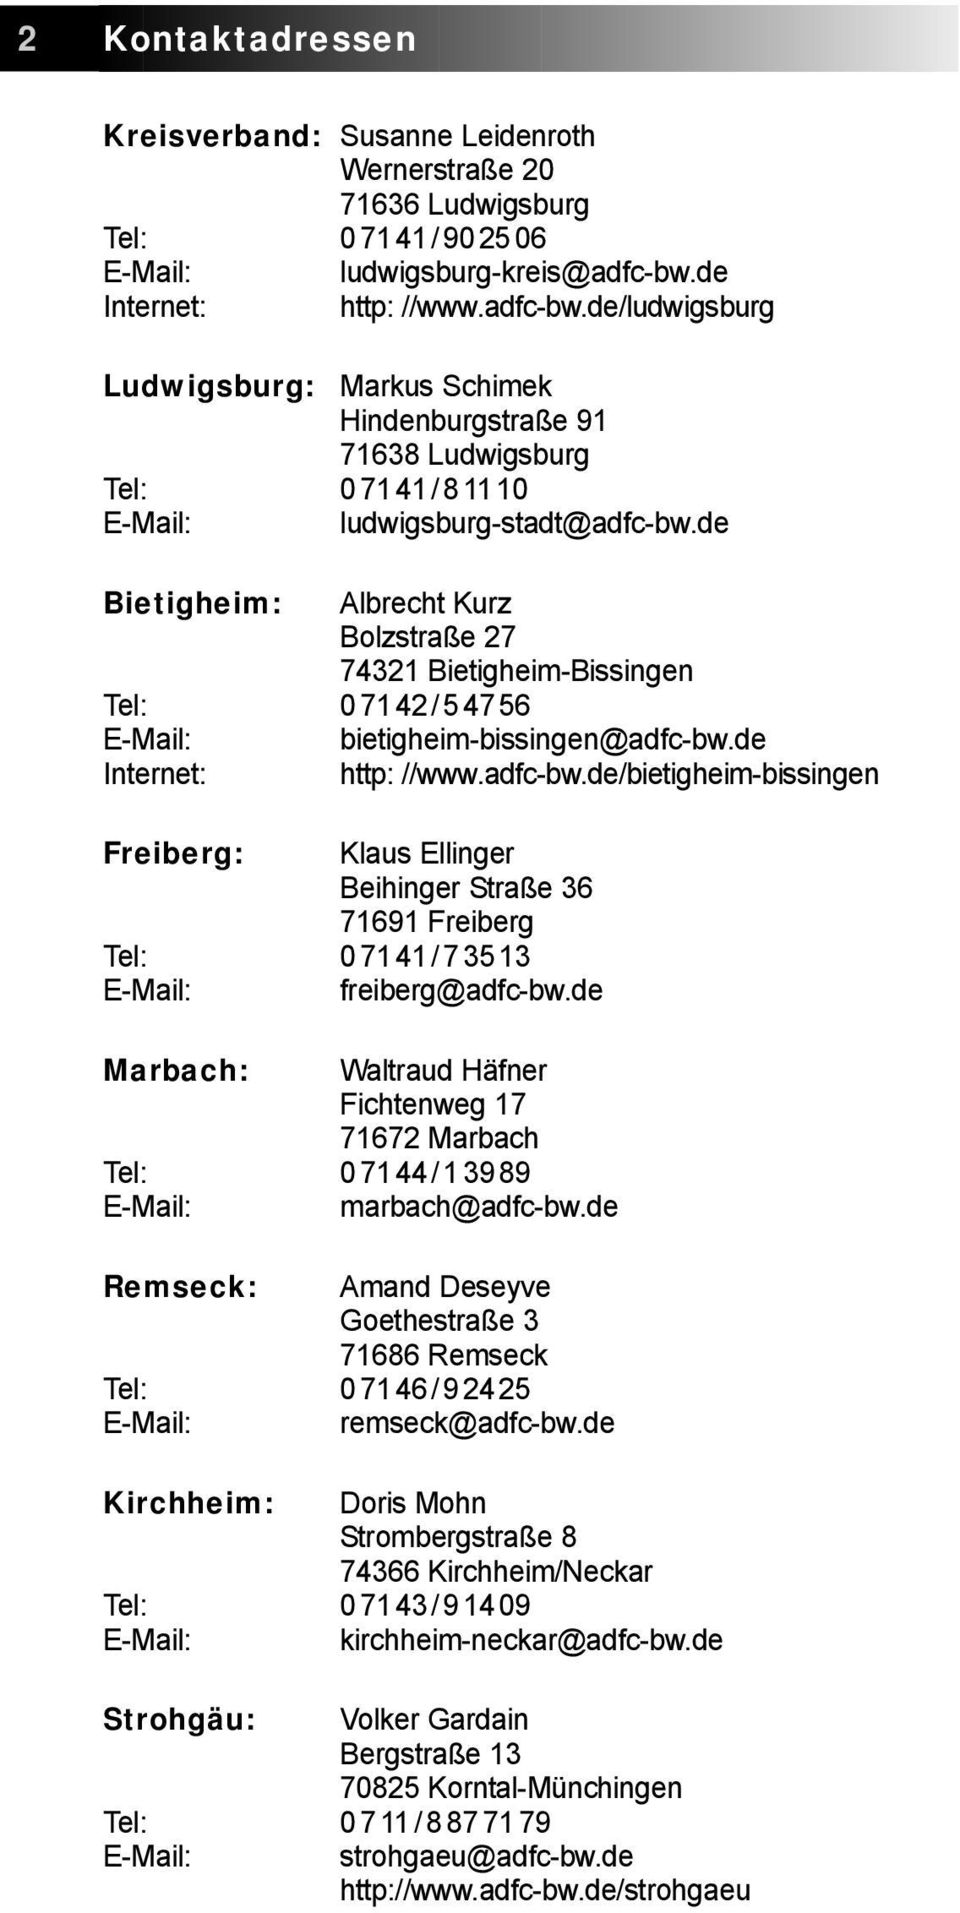 de Bietigheim: Albrecht Kurz Bolzstraße 27 74321 Bietigheim-Bissingen Tel: 07142/54756 E-Mail: bietigheim-bissingen@adfc-bw.